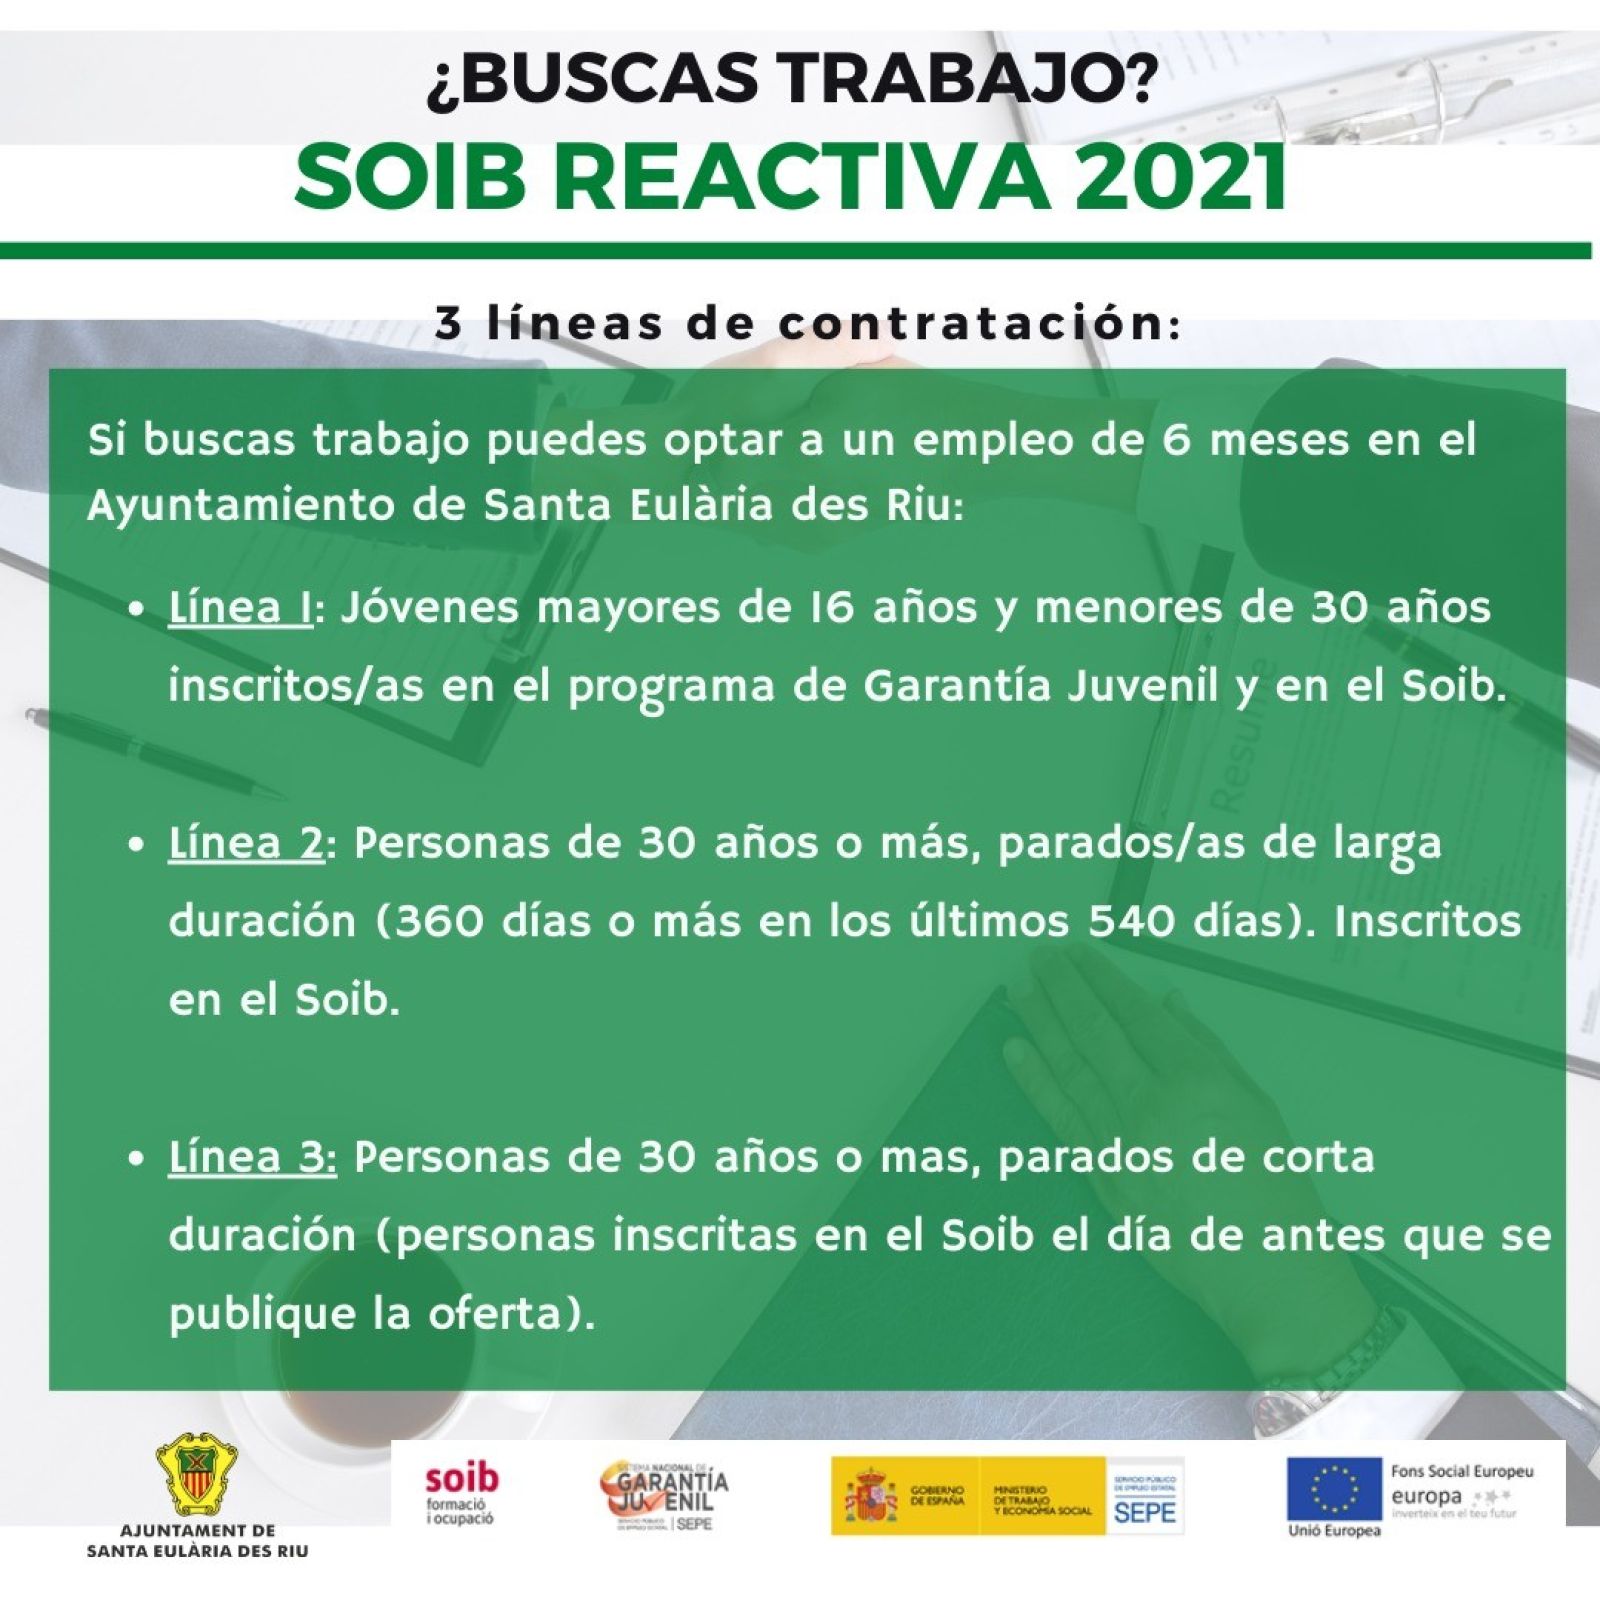 El Ayuntamiento de Santa Eulària des Riu contratará a 10 personas en paro dentro del programa SOIB Reactiva